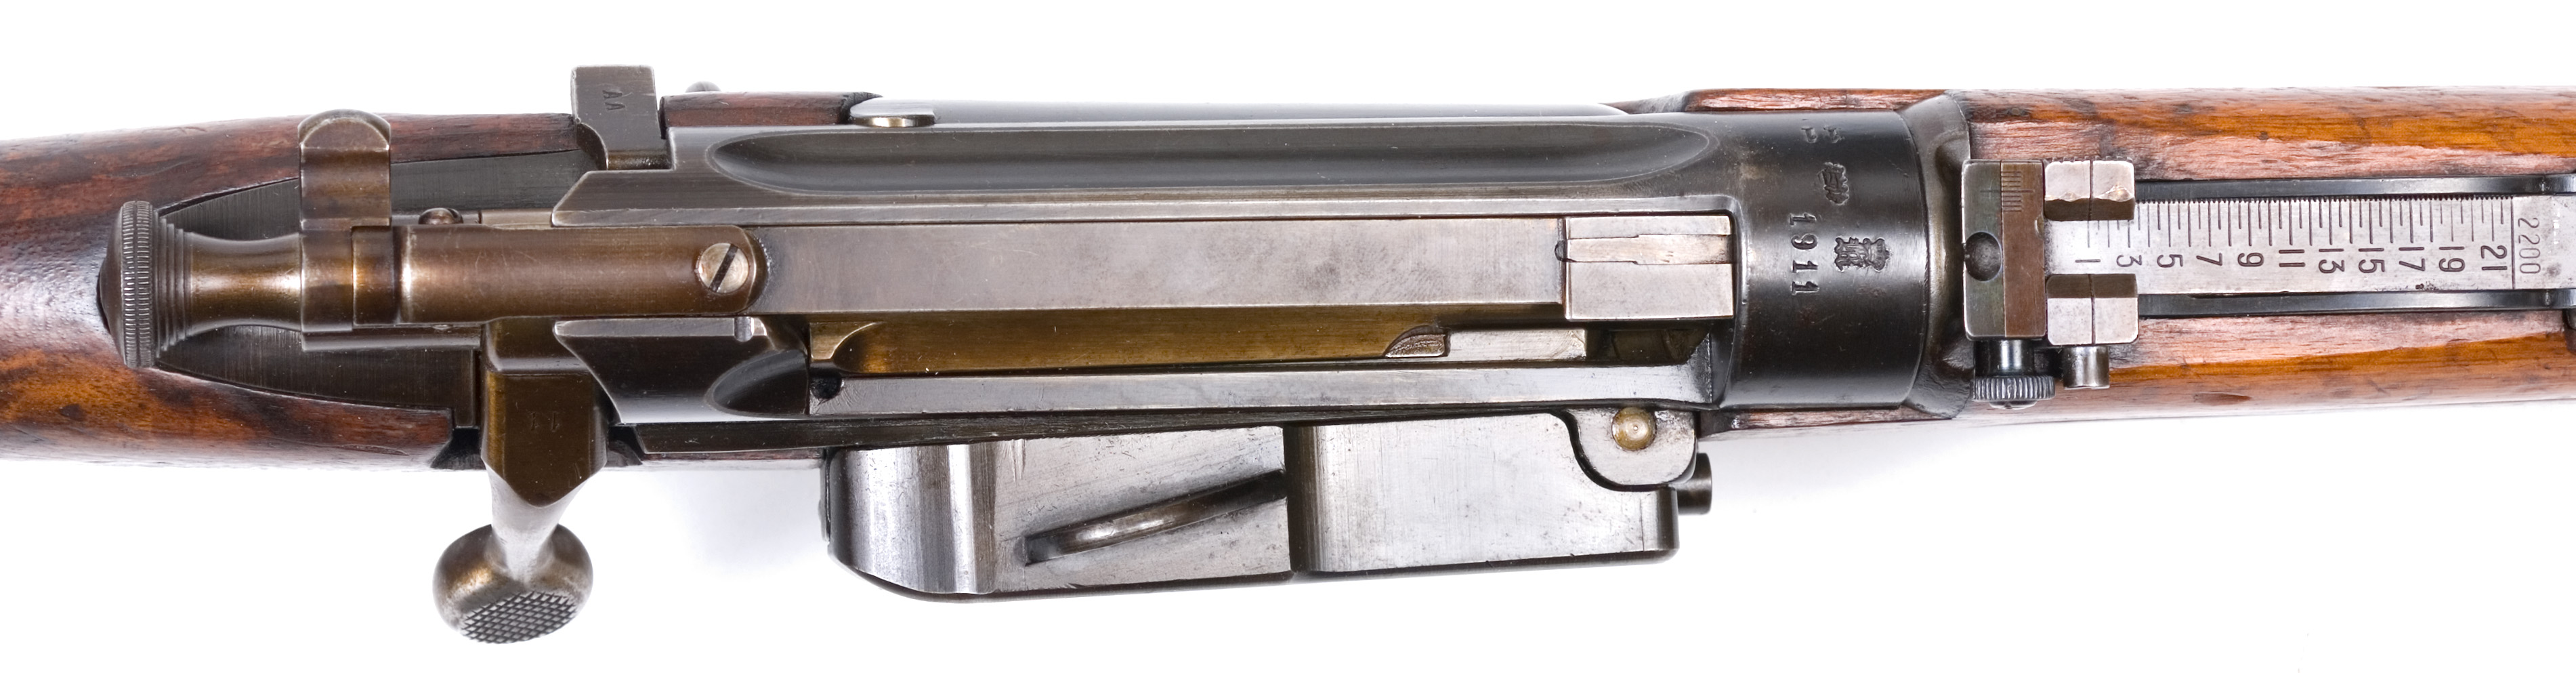 ./guns/rifle/bilder/Rifle-Kongsberg-Krag-M1912-prove-11-3.jpg